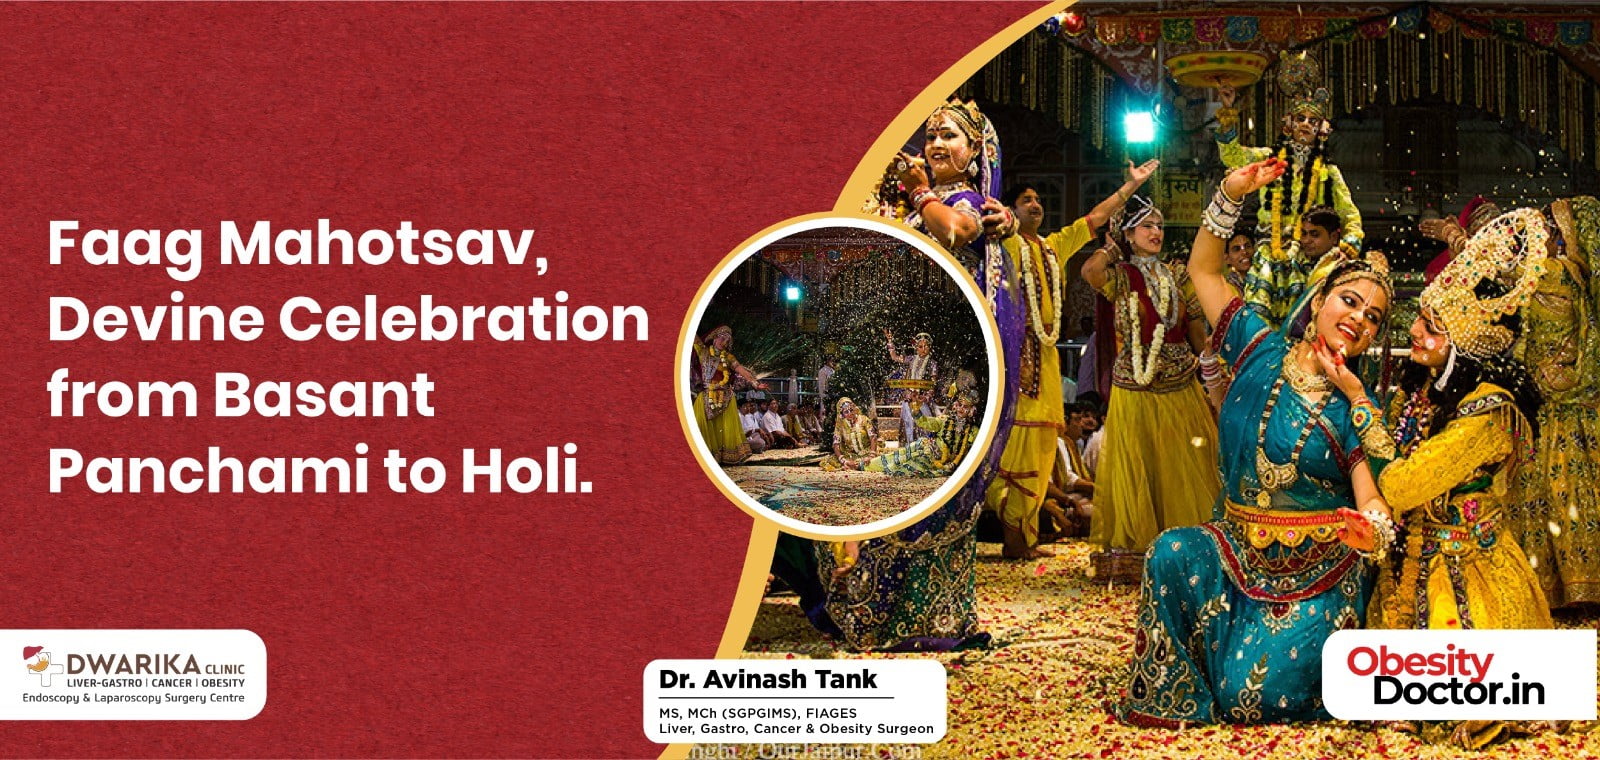 Faag Mahotsav, Devine Celebration from Basant Panchami to Holi.